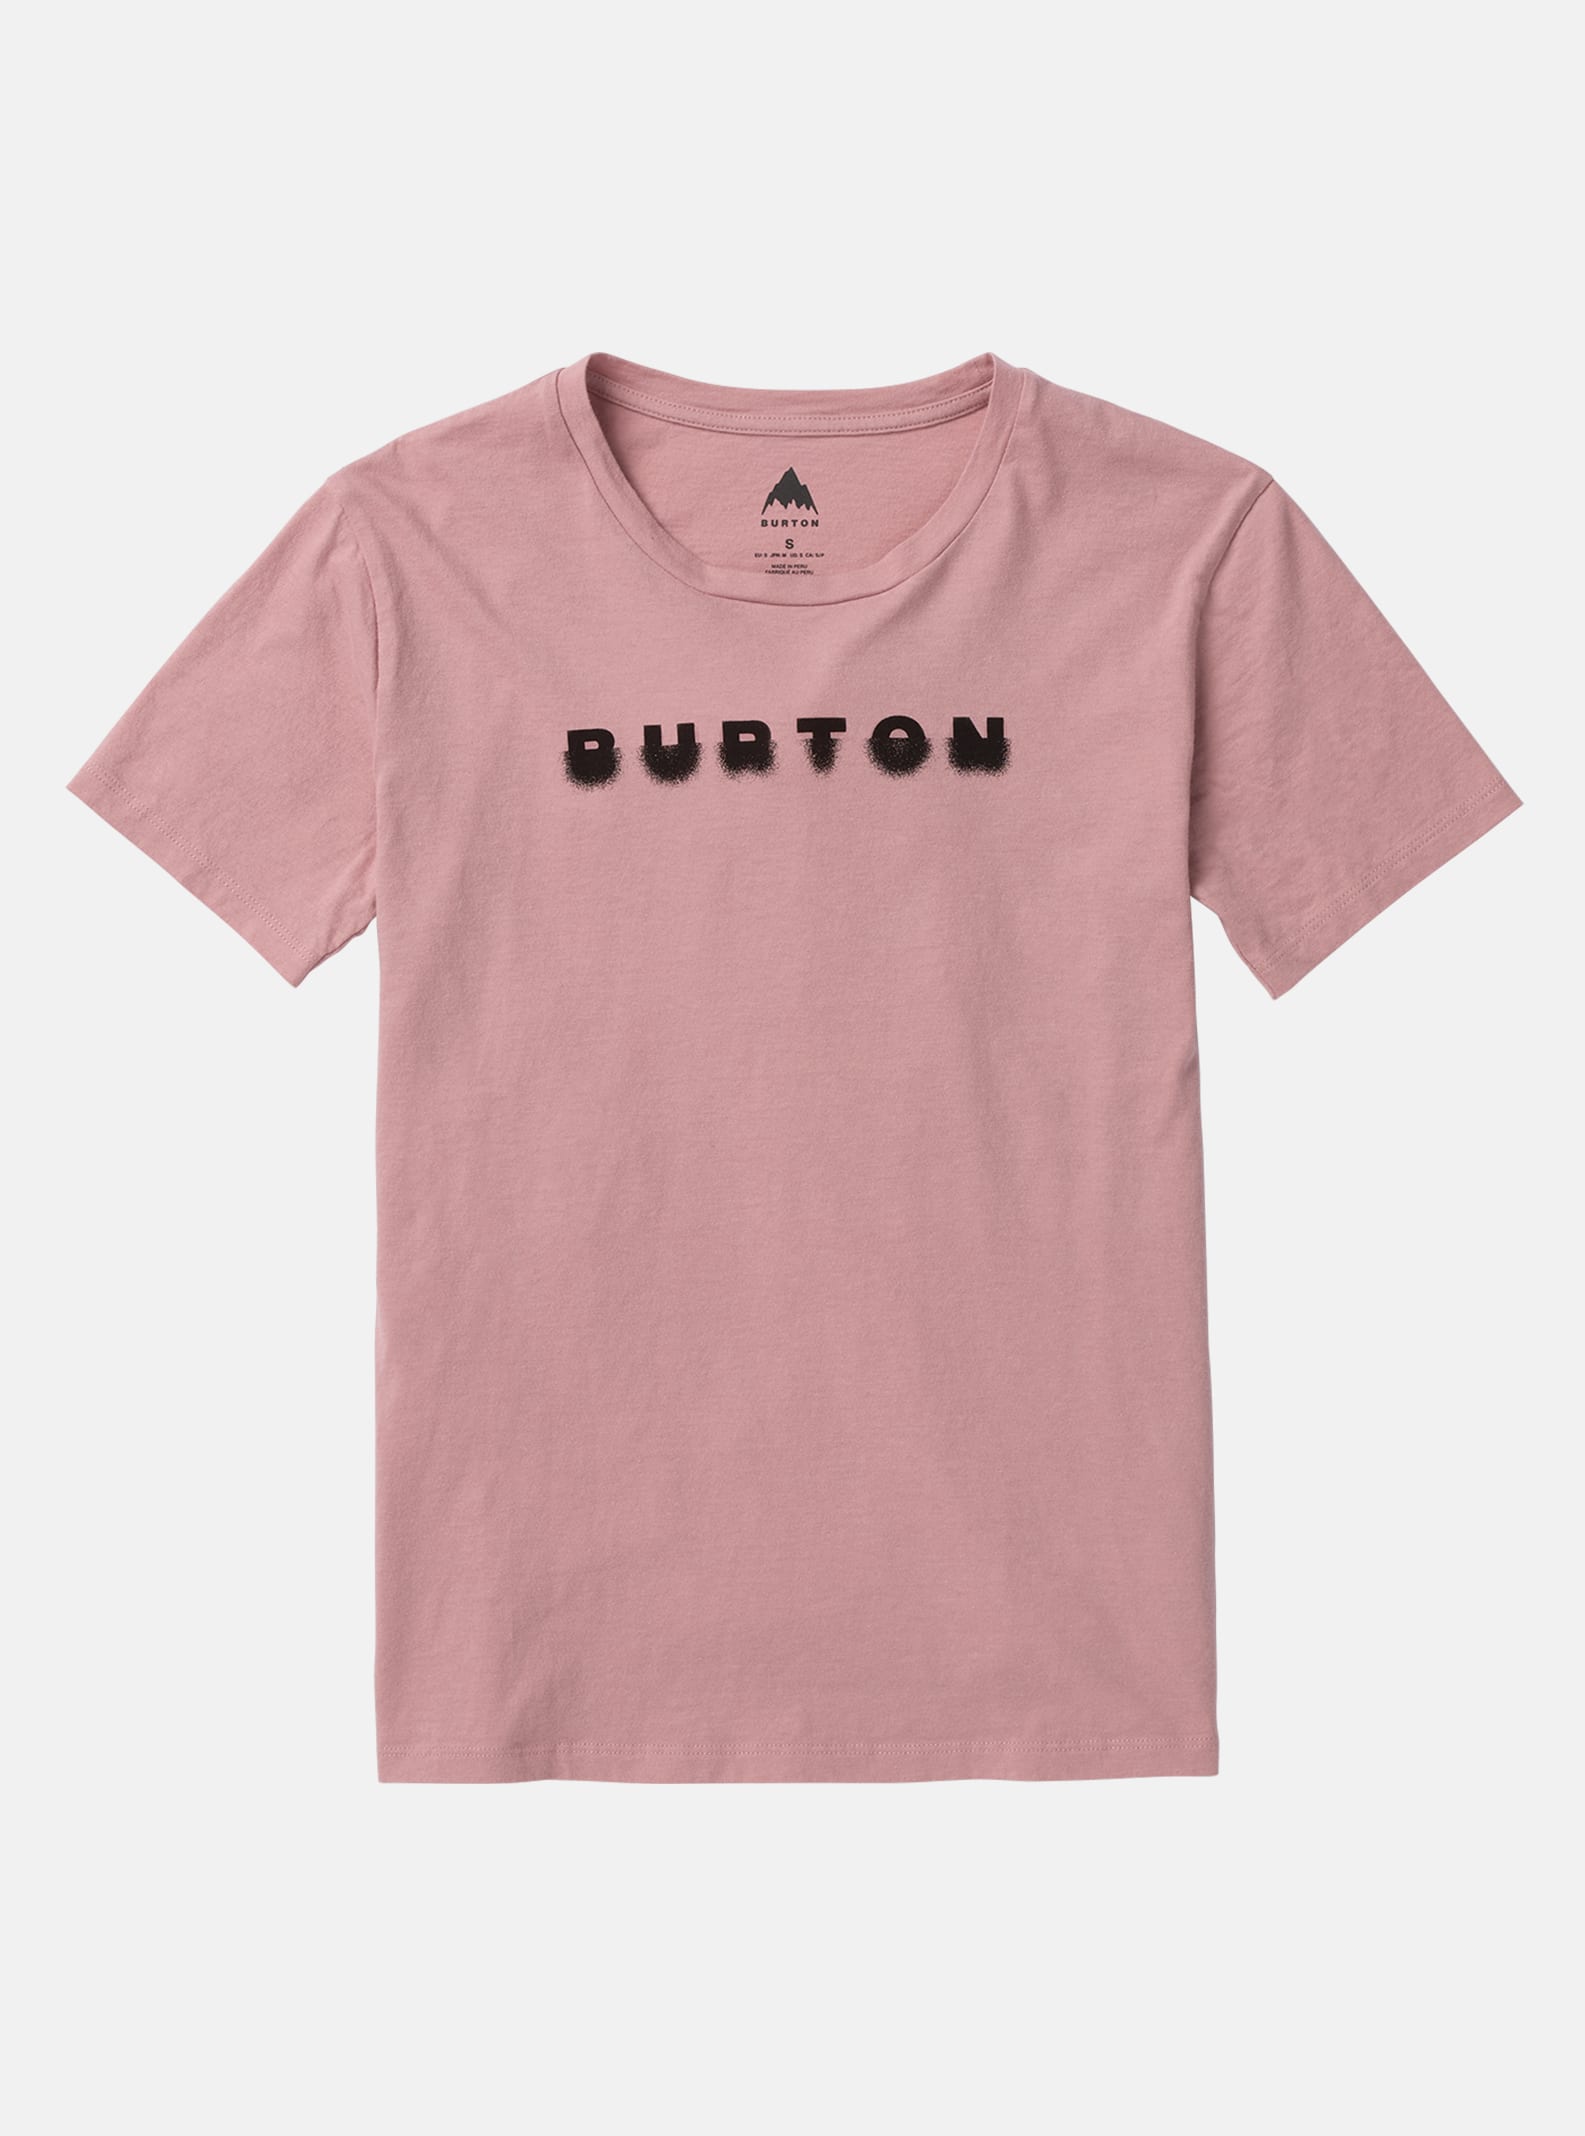 Burton T-shirt för dam - Cosmist, Powder Blush, M